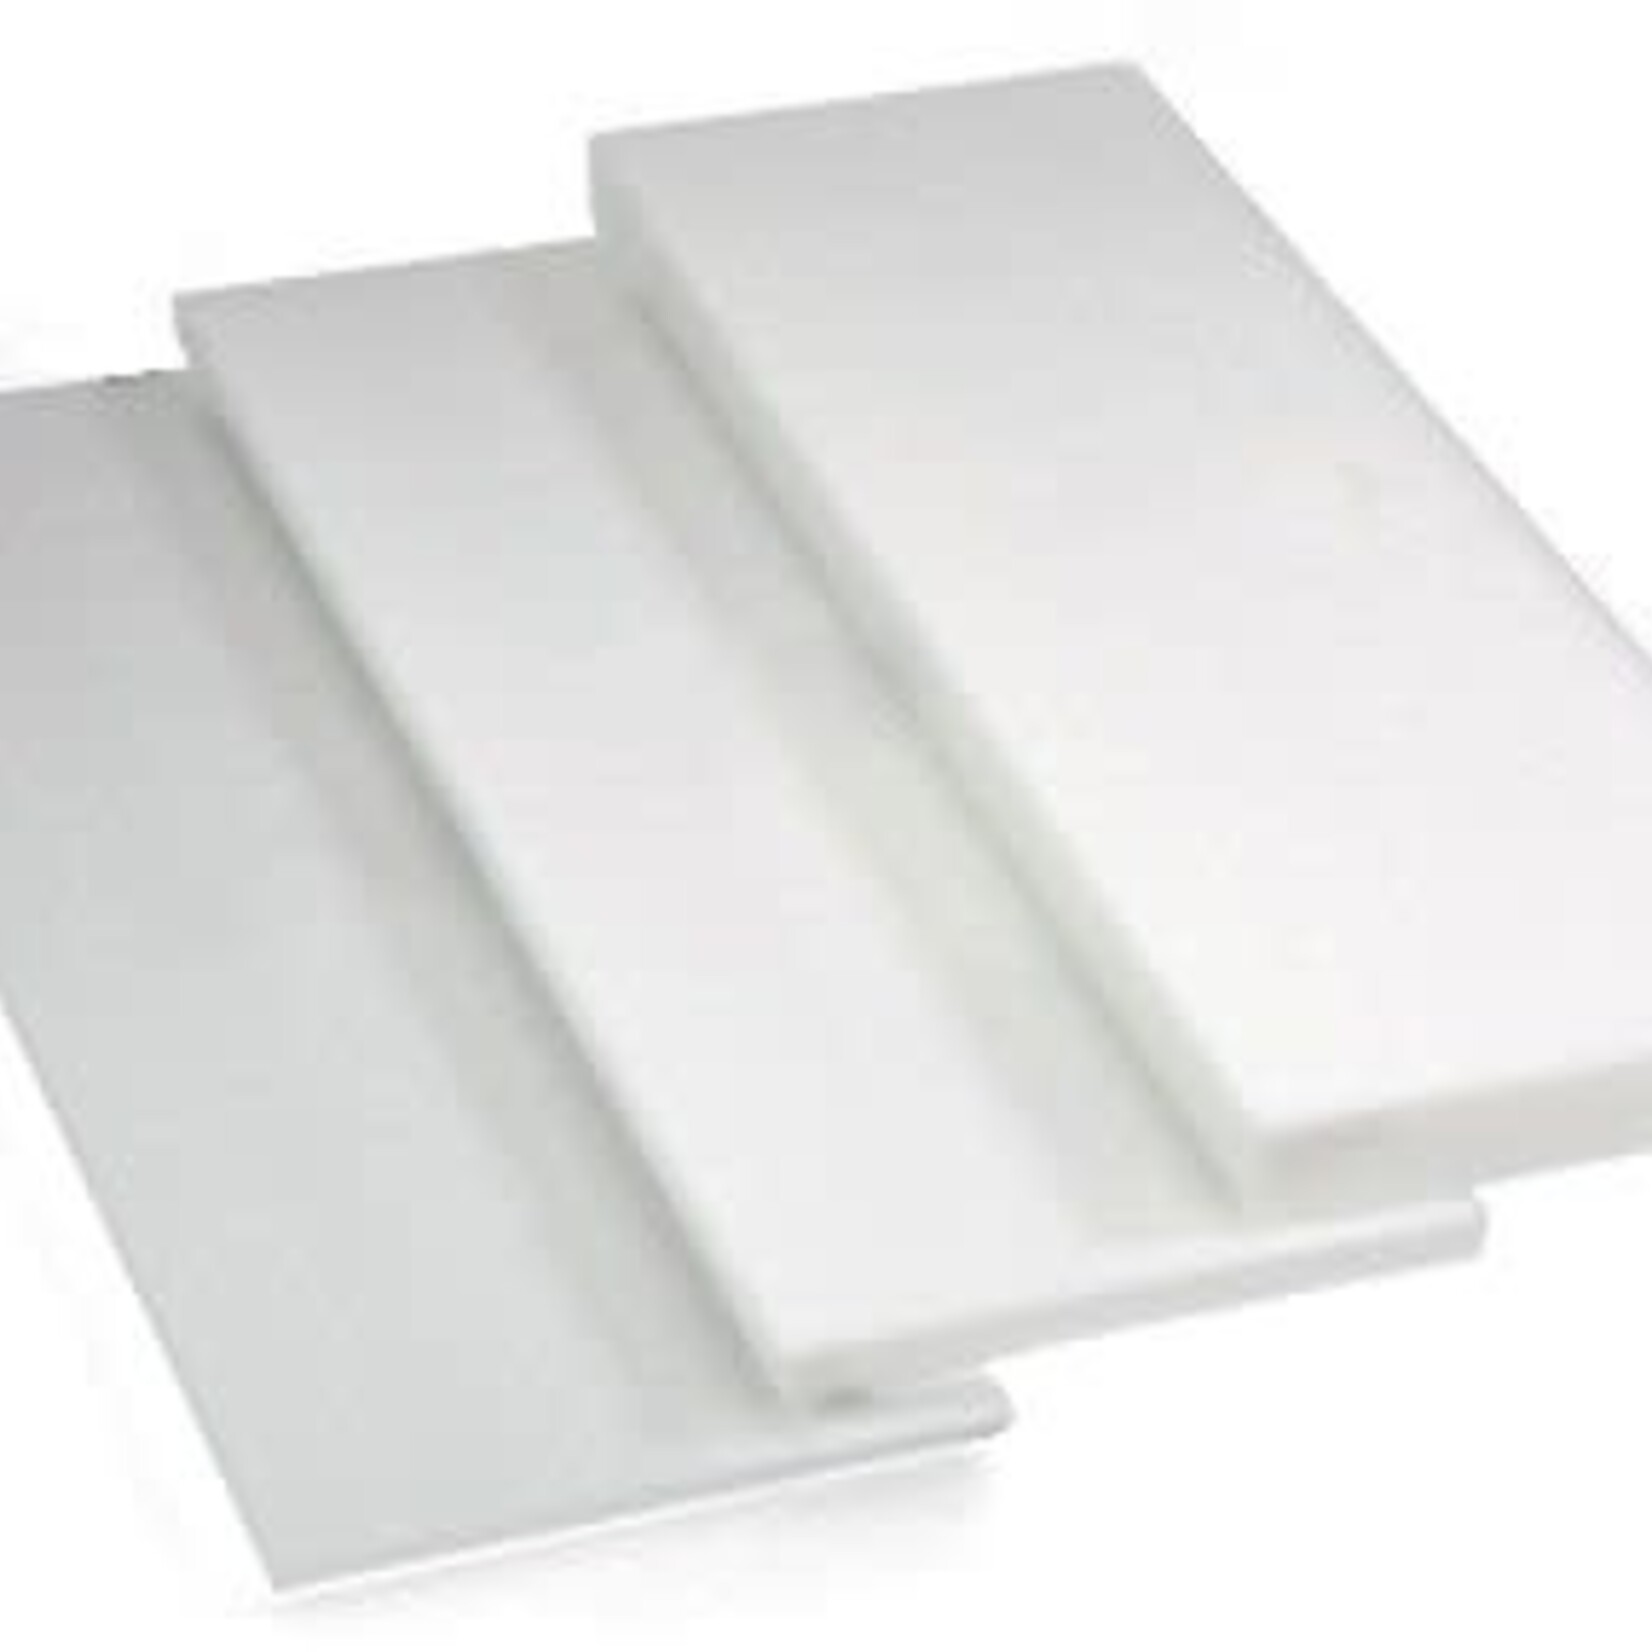 Styrofoam Sheet White 2 x 4feet x 3/4 Inch